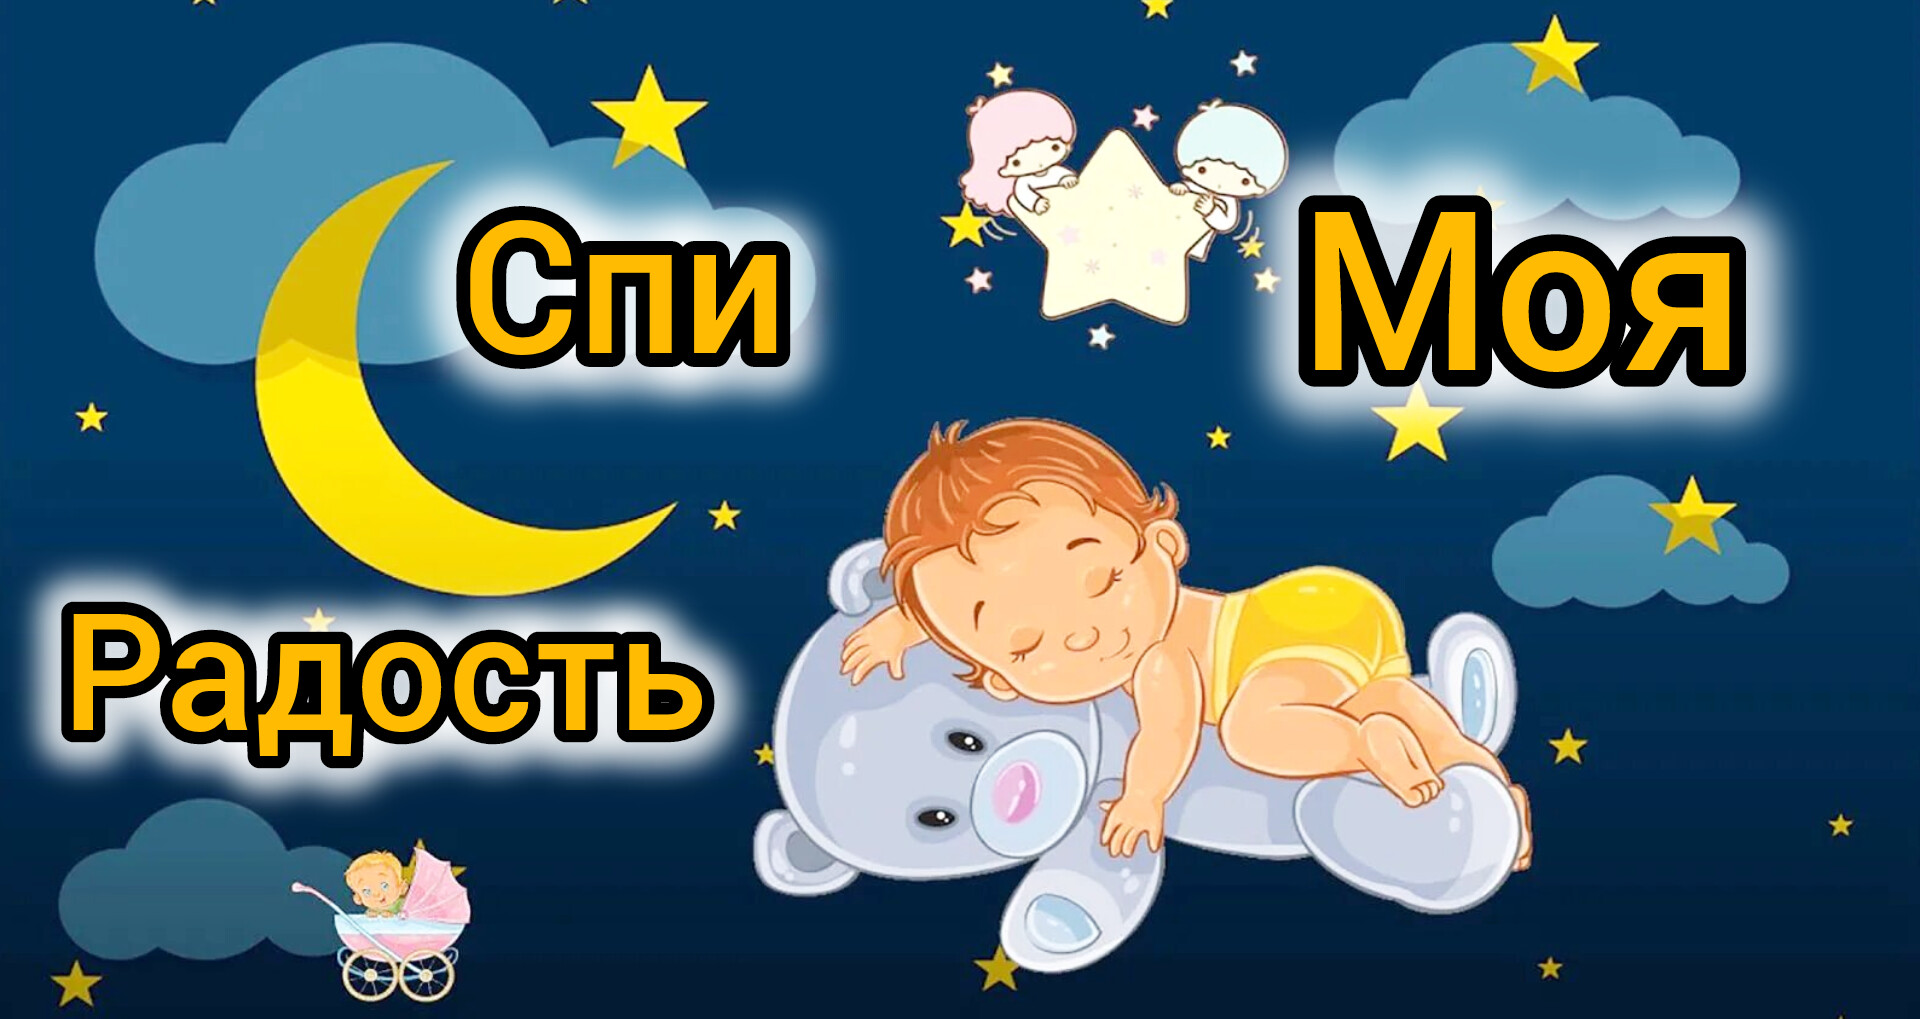 🎵❤ Волшебная Колыбельная для малыша 🎵❤ A magical Lullaby for a baby